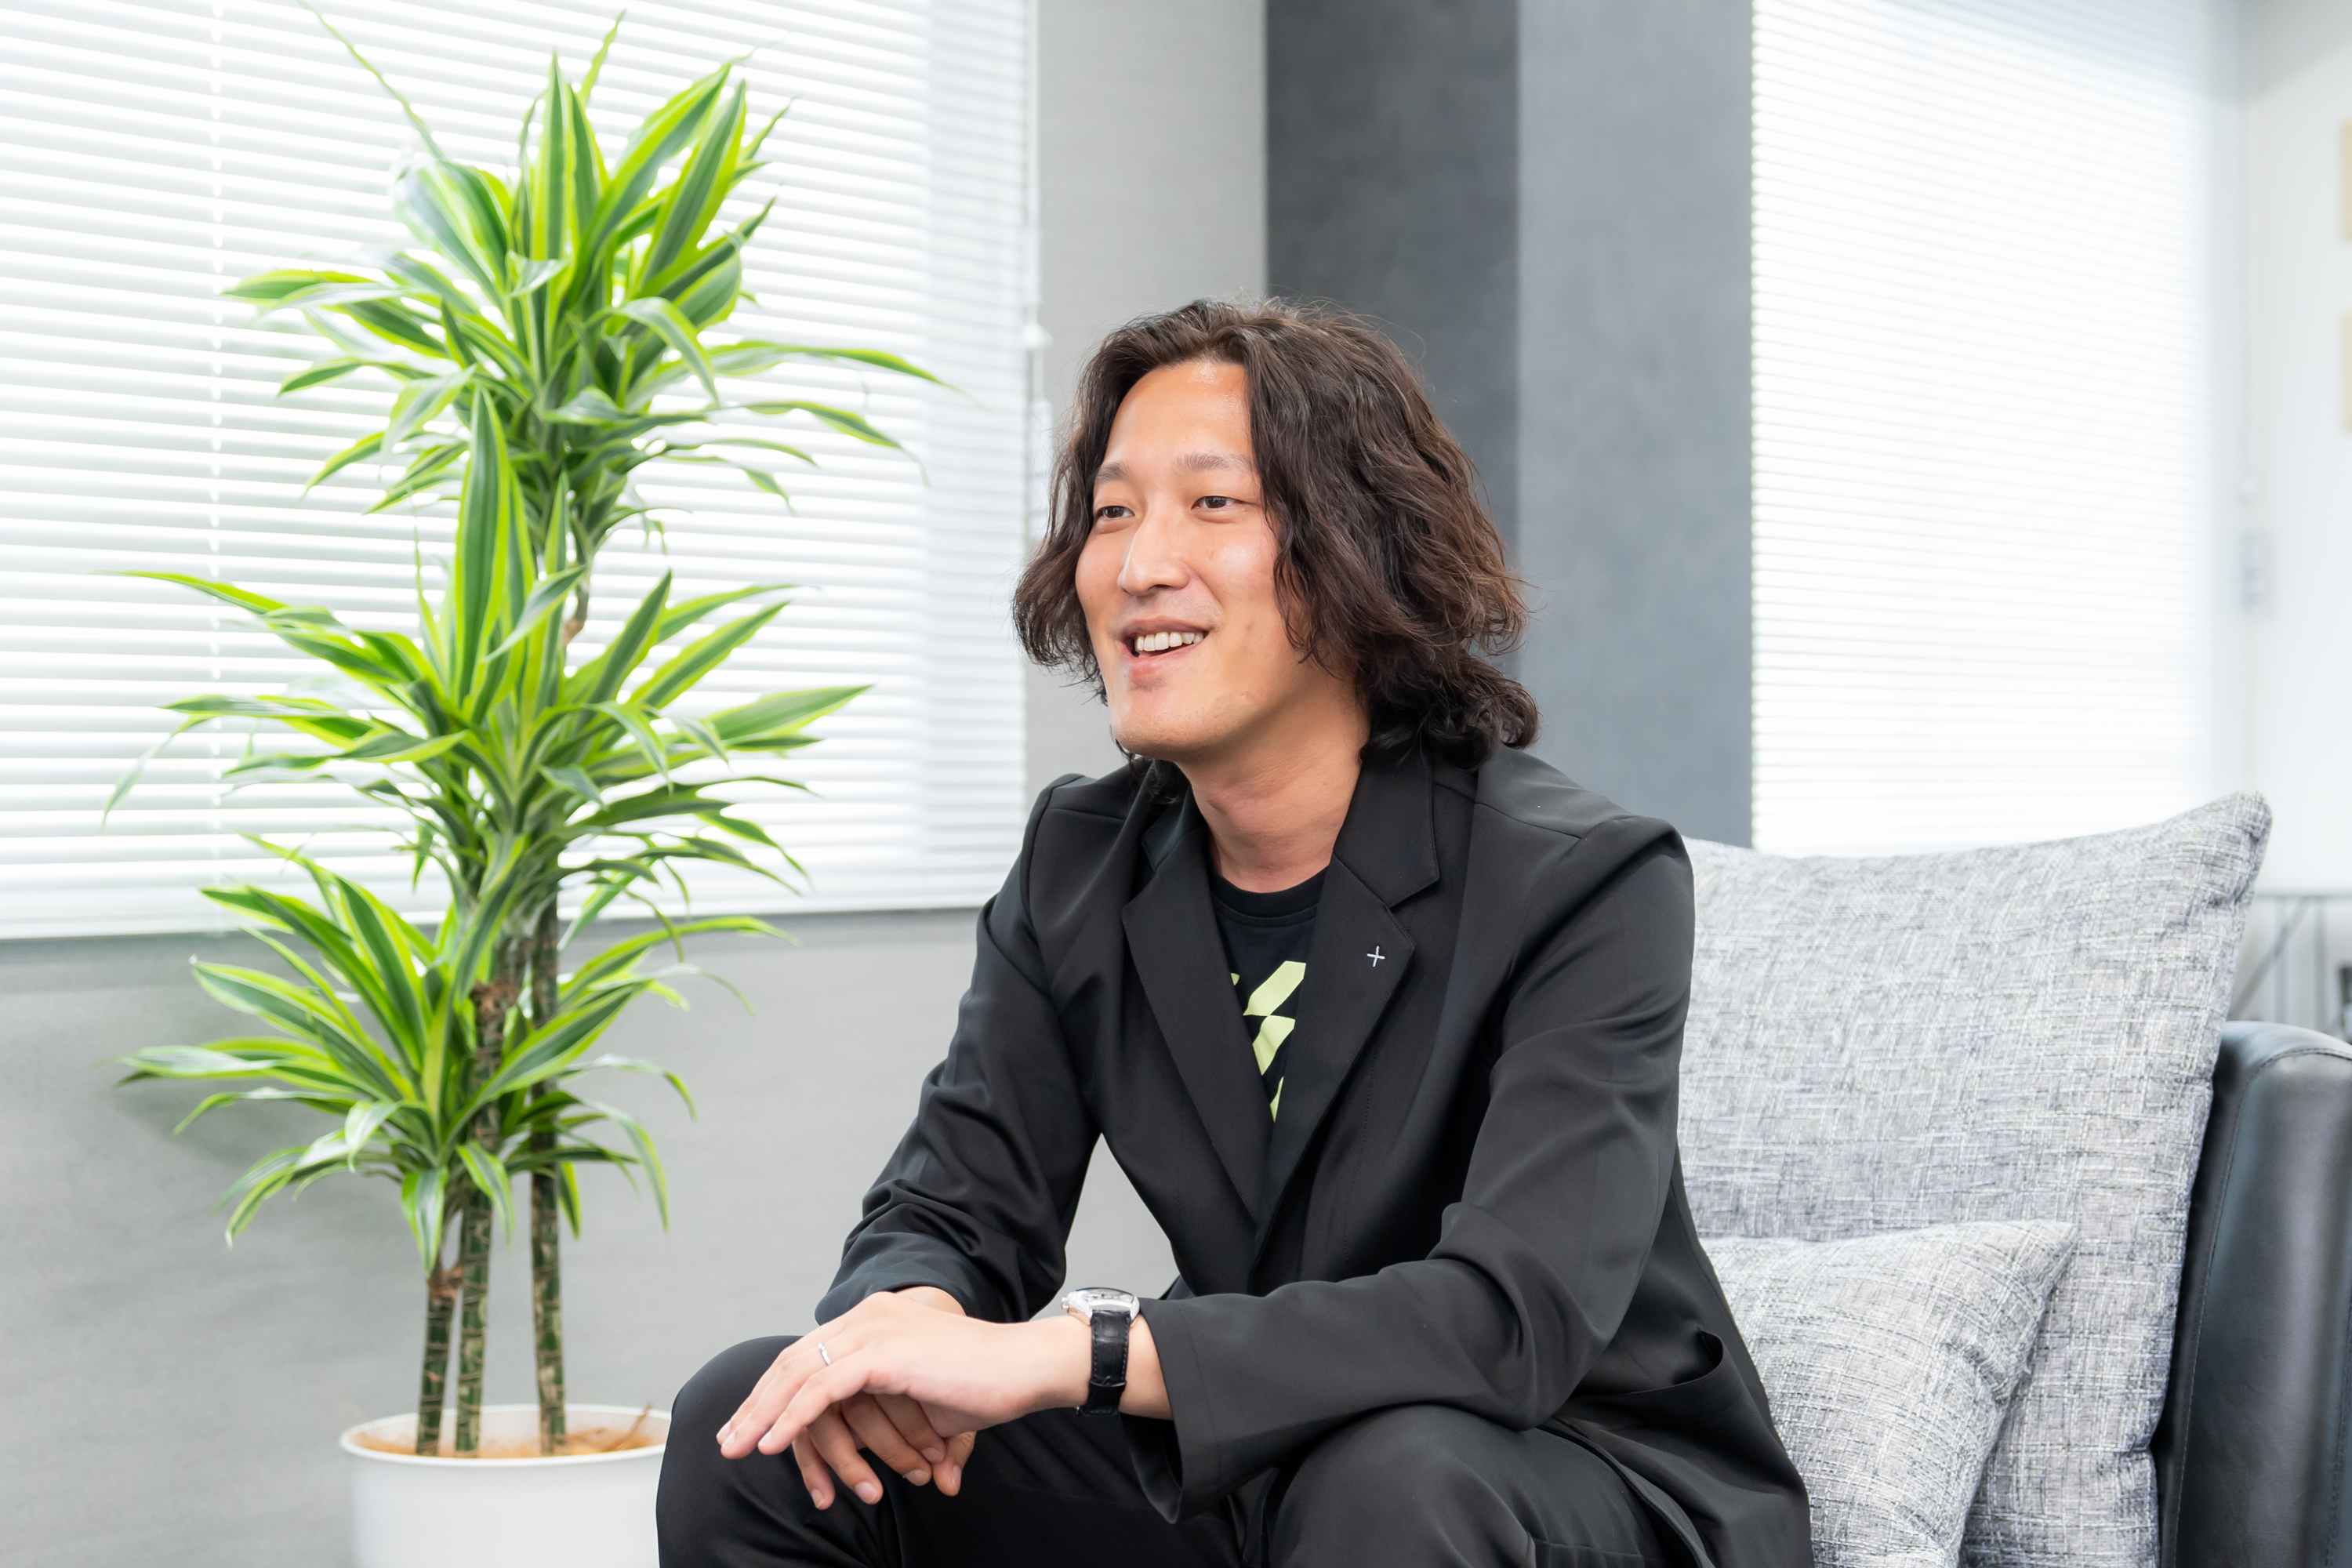 代表の廣瀬寛氏は、広告プラットフォーム事業等を手掛ける会社にジョインし、広告事業部門の責任者として同社の成長を牽引。上場後はコーポレート部門の責任者を務めた人物である。同社の取締役を退任して、株式会社FUNDiTを創業した。